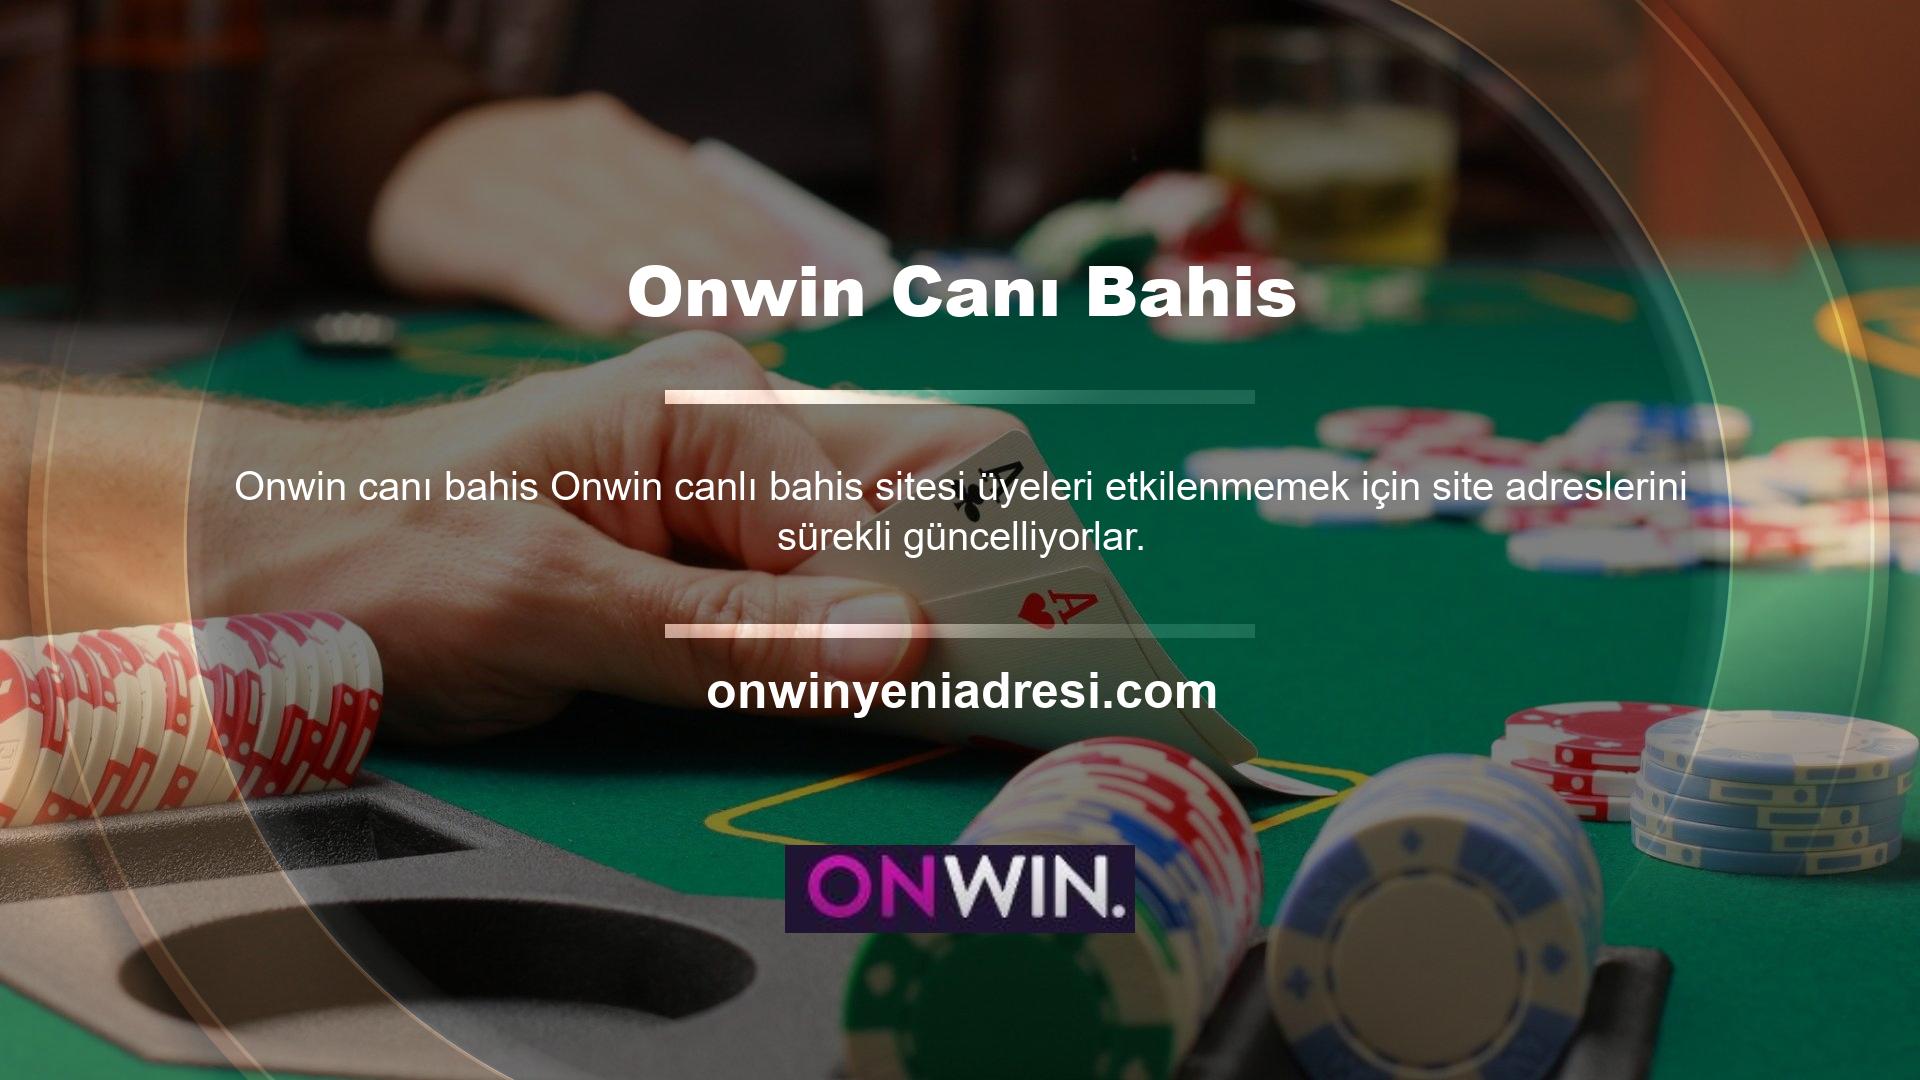 Onwin giriş adresini her zaman web sitemizden takip edebilirsiniz